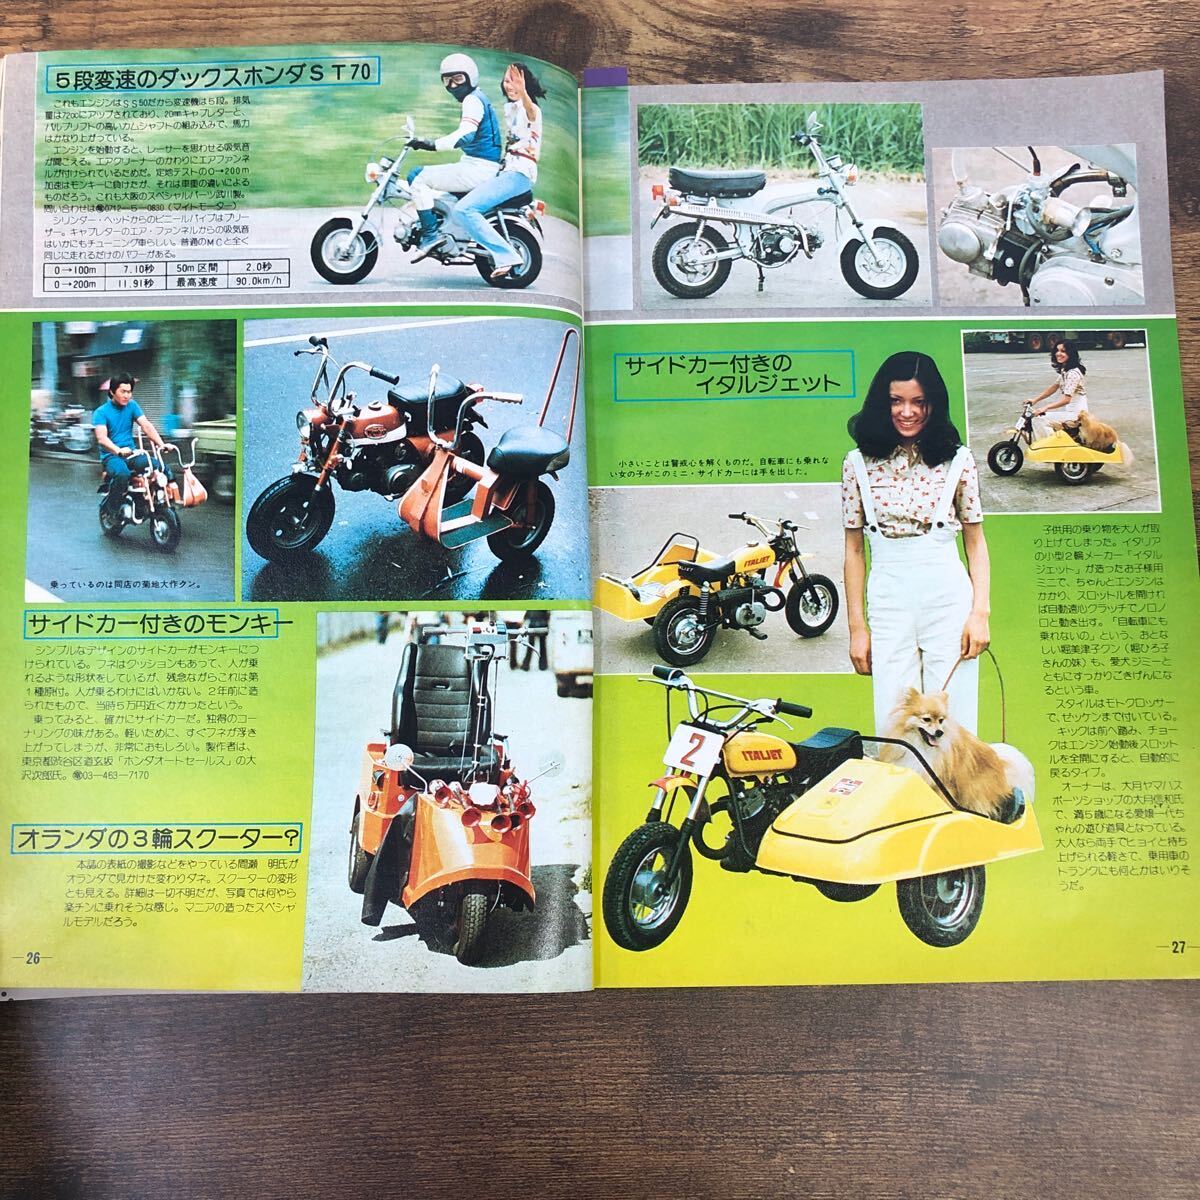 【バイク雑誌 1974.12発行】モーターサイクリスト 1970年代バイク雑誌の画像2